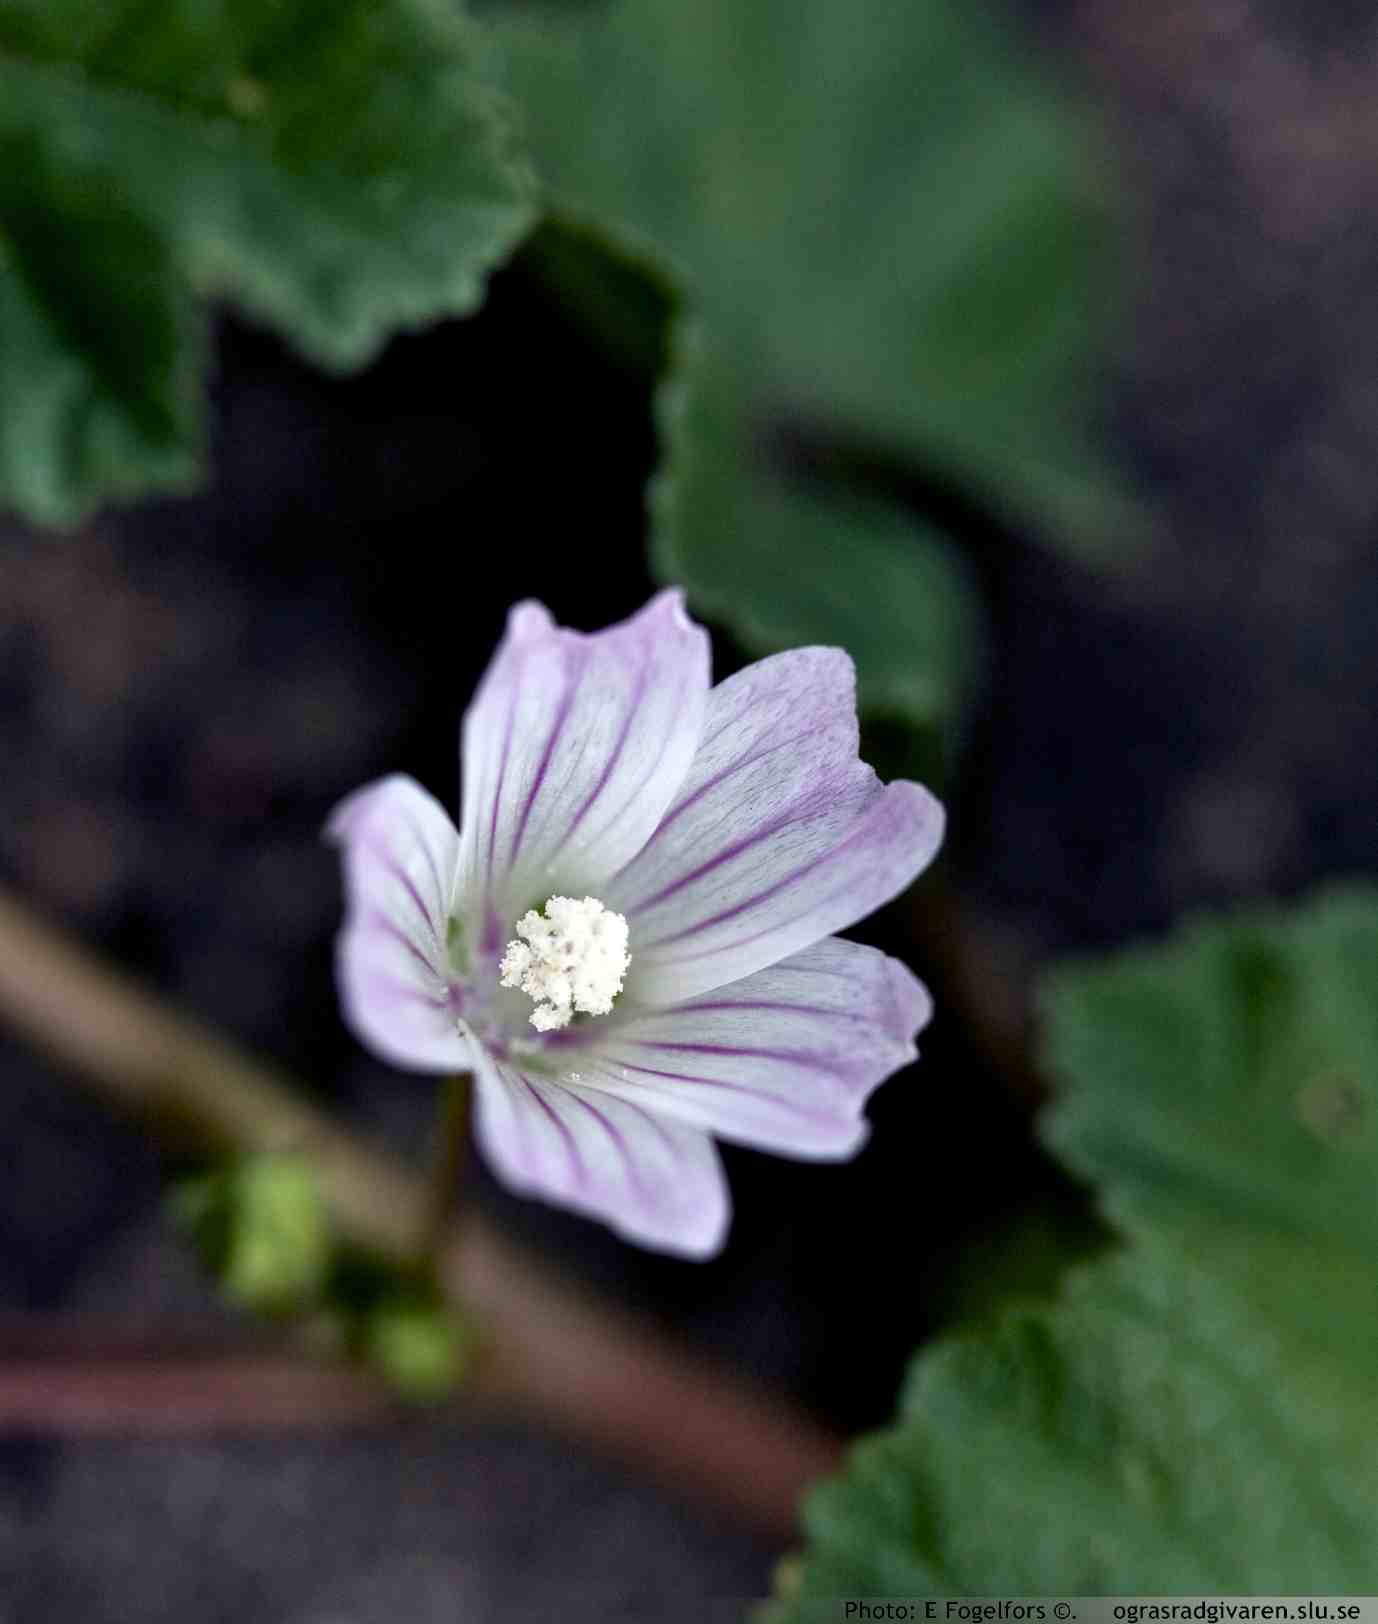 Blomma blekrosa-nästan vita med mörkare ådring. Kronblad ca 1 cm långa.